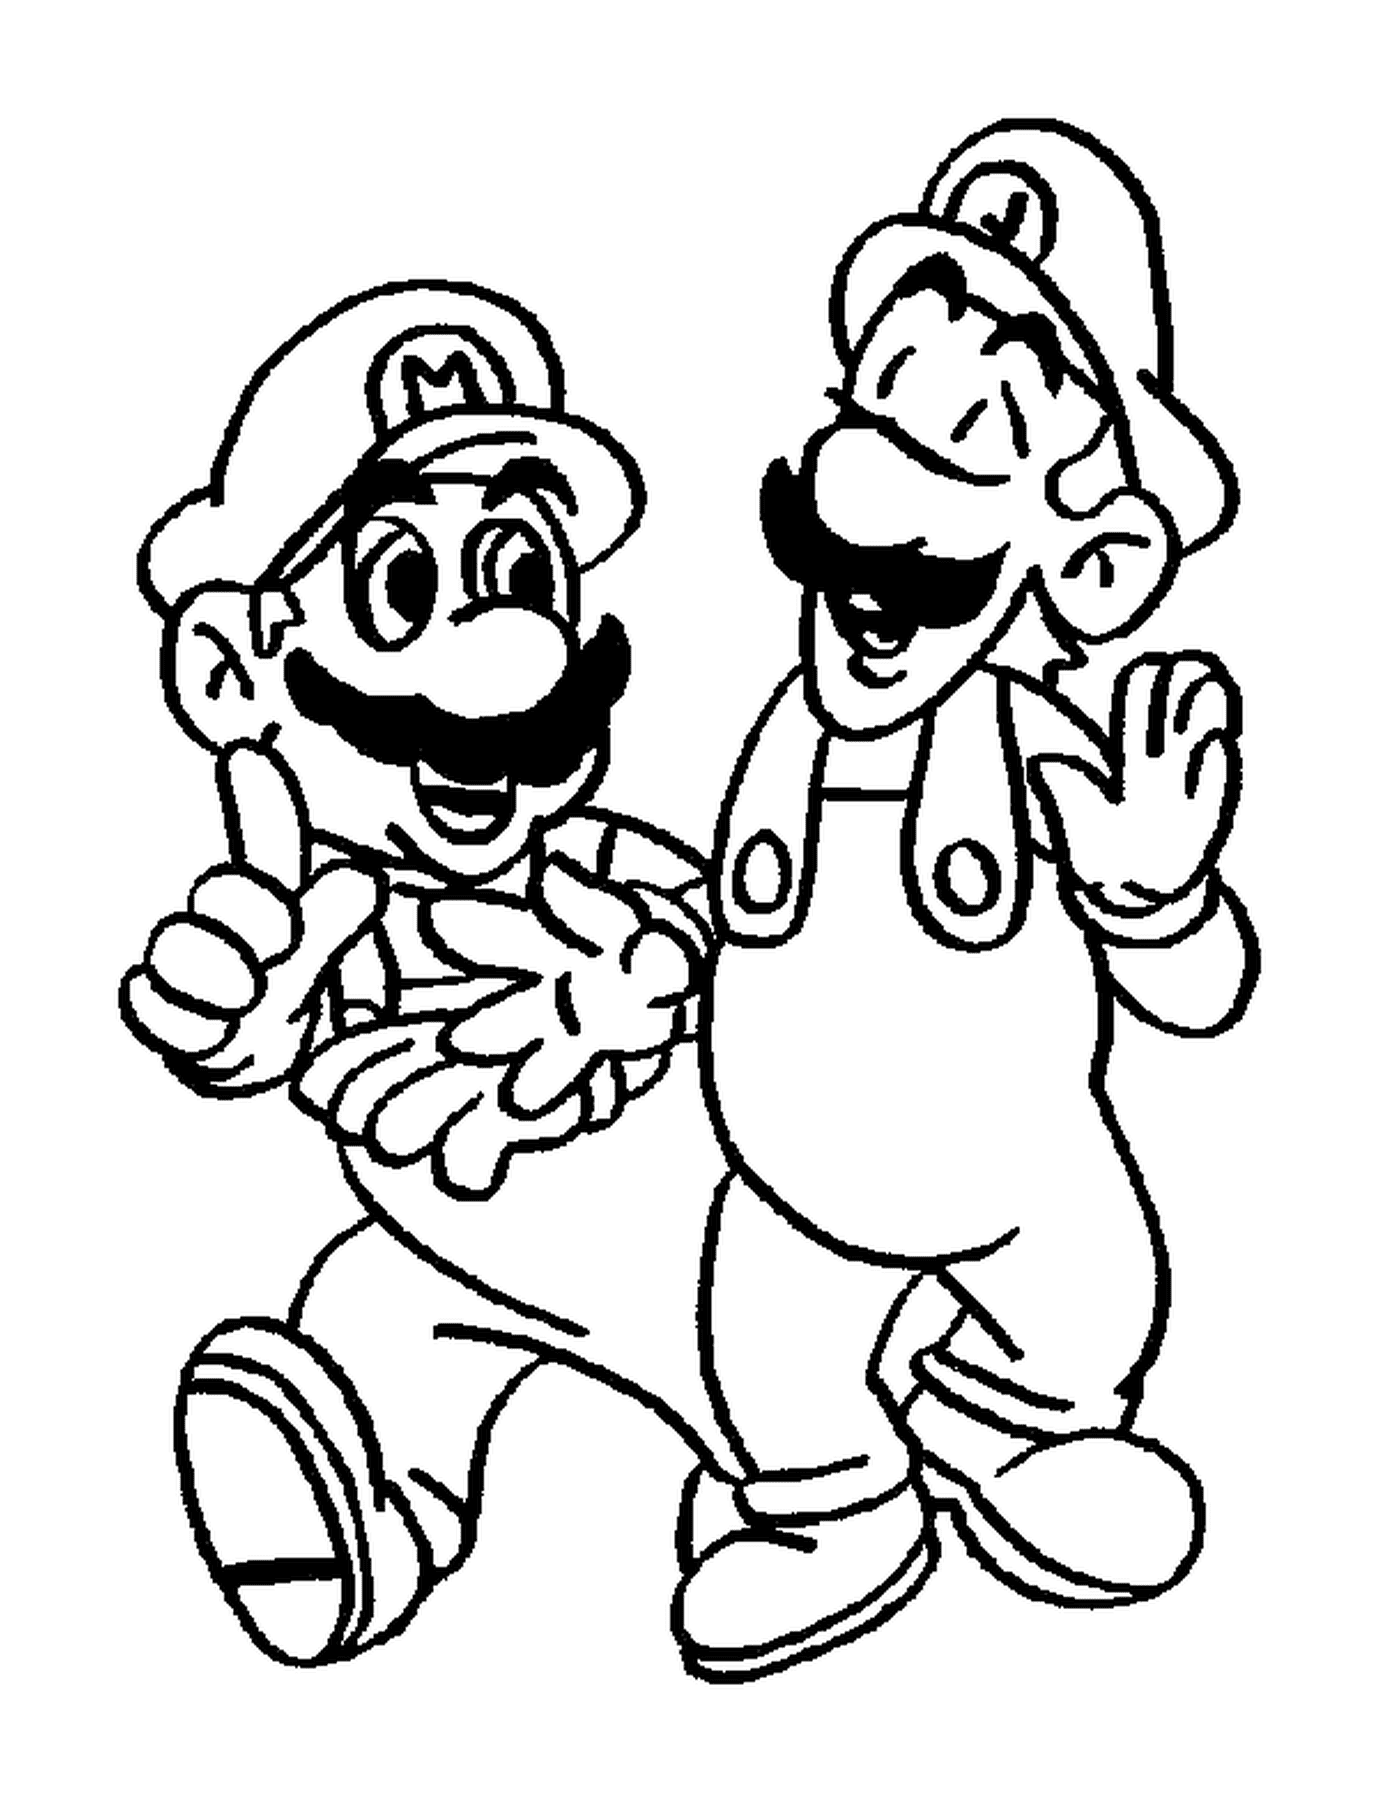   Luigi et Mario, deux frères inséparables 